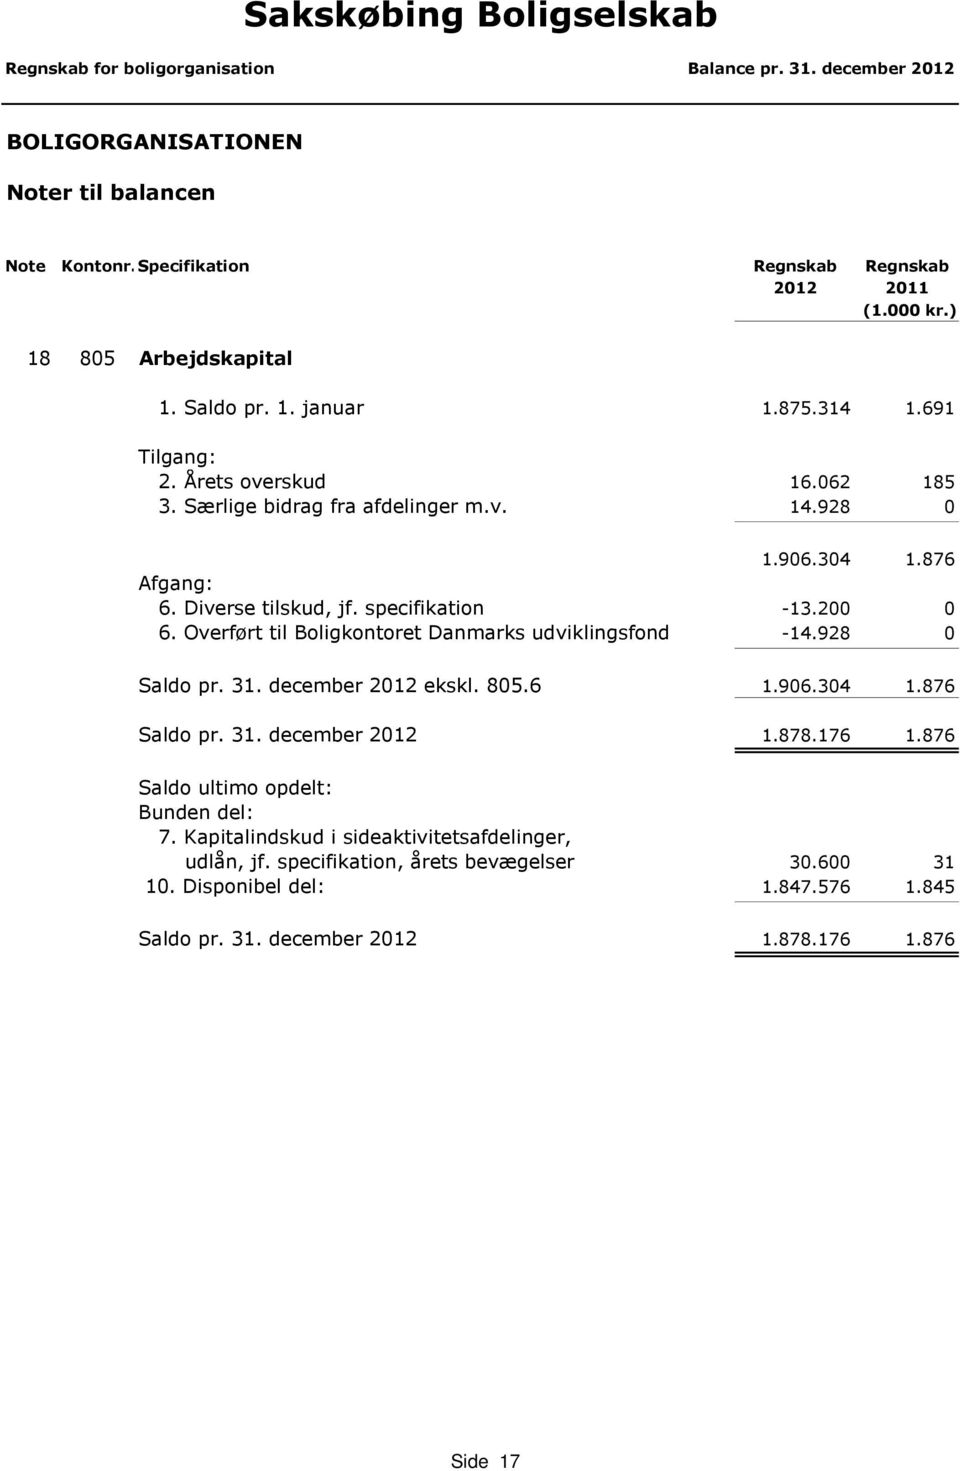 Overført til Boligkontoret Danmarks udviklingsfond -14.928 0 Saldo pr. 31. december 2012 ekskl. 805.6 1.906.304 1.876 Saldo pr. 31. december 2012 1.878.176 1.